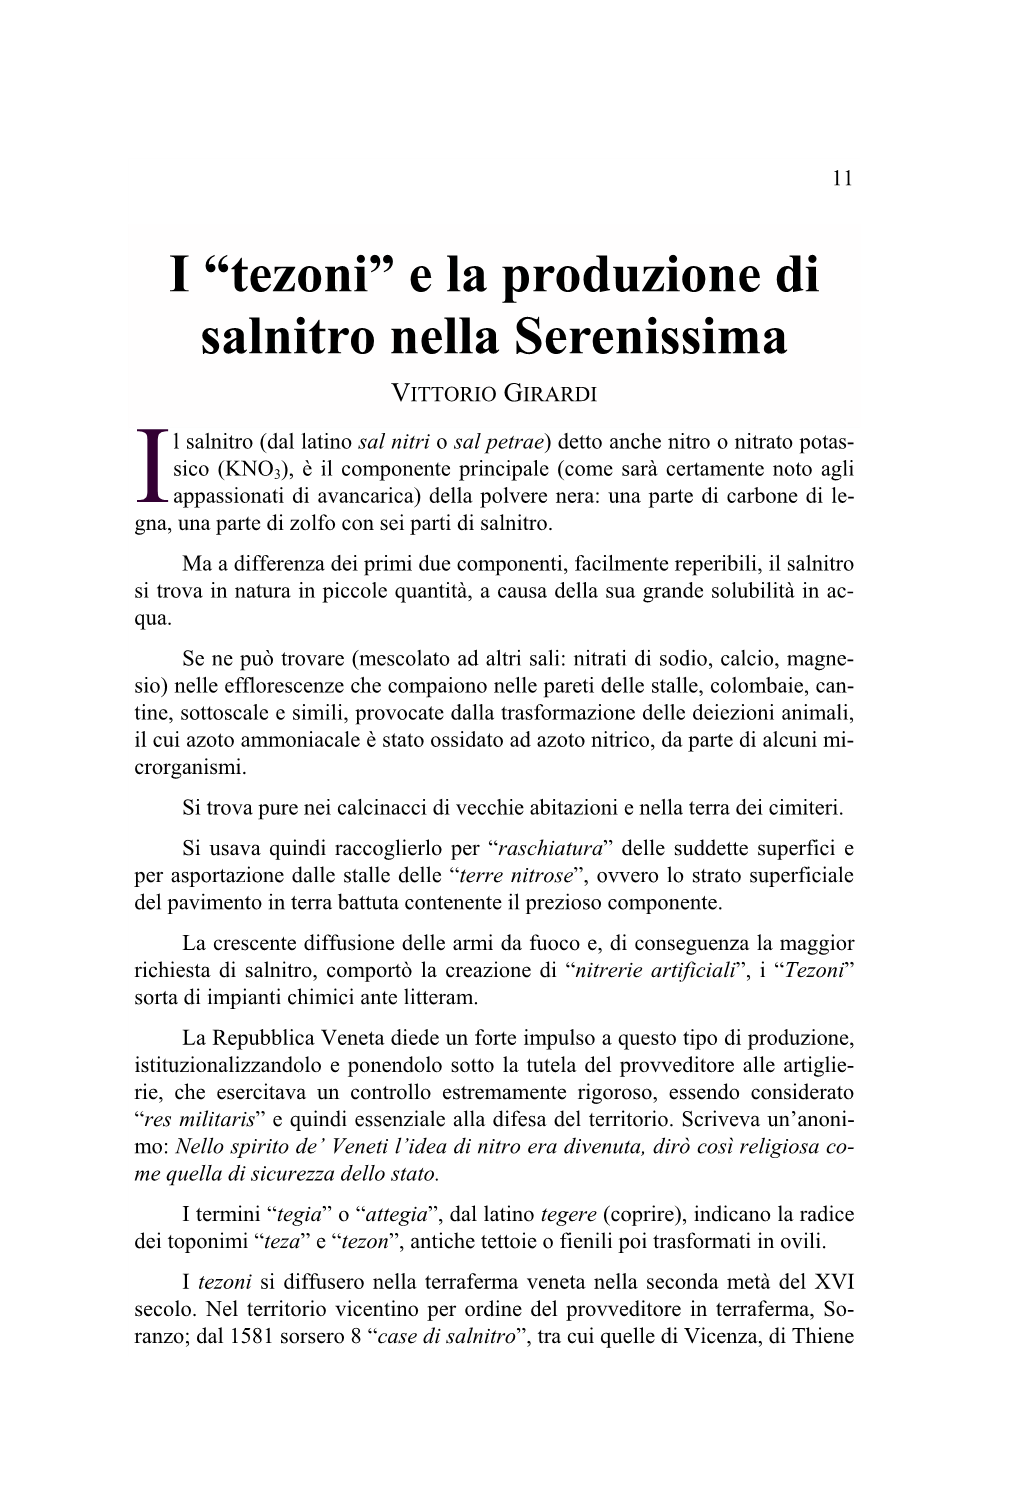 I “Tezoni” E La Produzione Di Salnitro Nella Serenissima VITTORIO GIRARDI